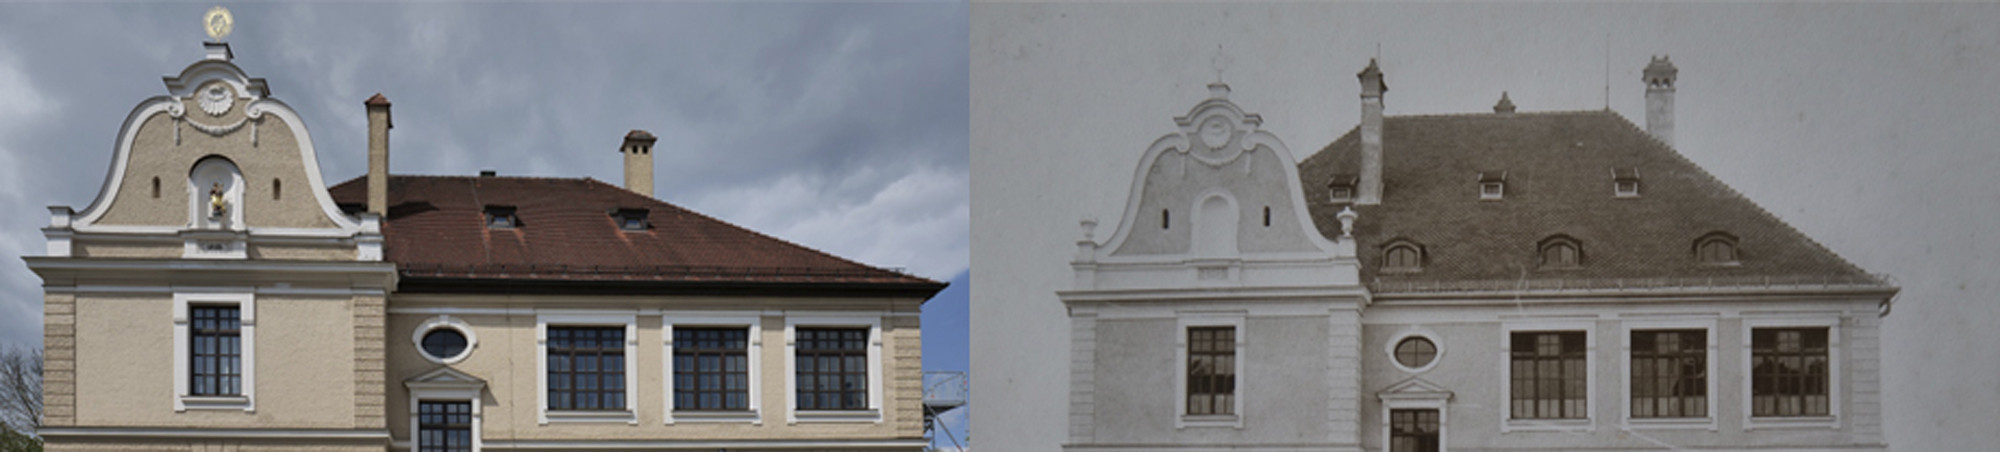 Links: Gebäude heute, rechts: kurz nach Fertigstellung